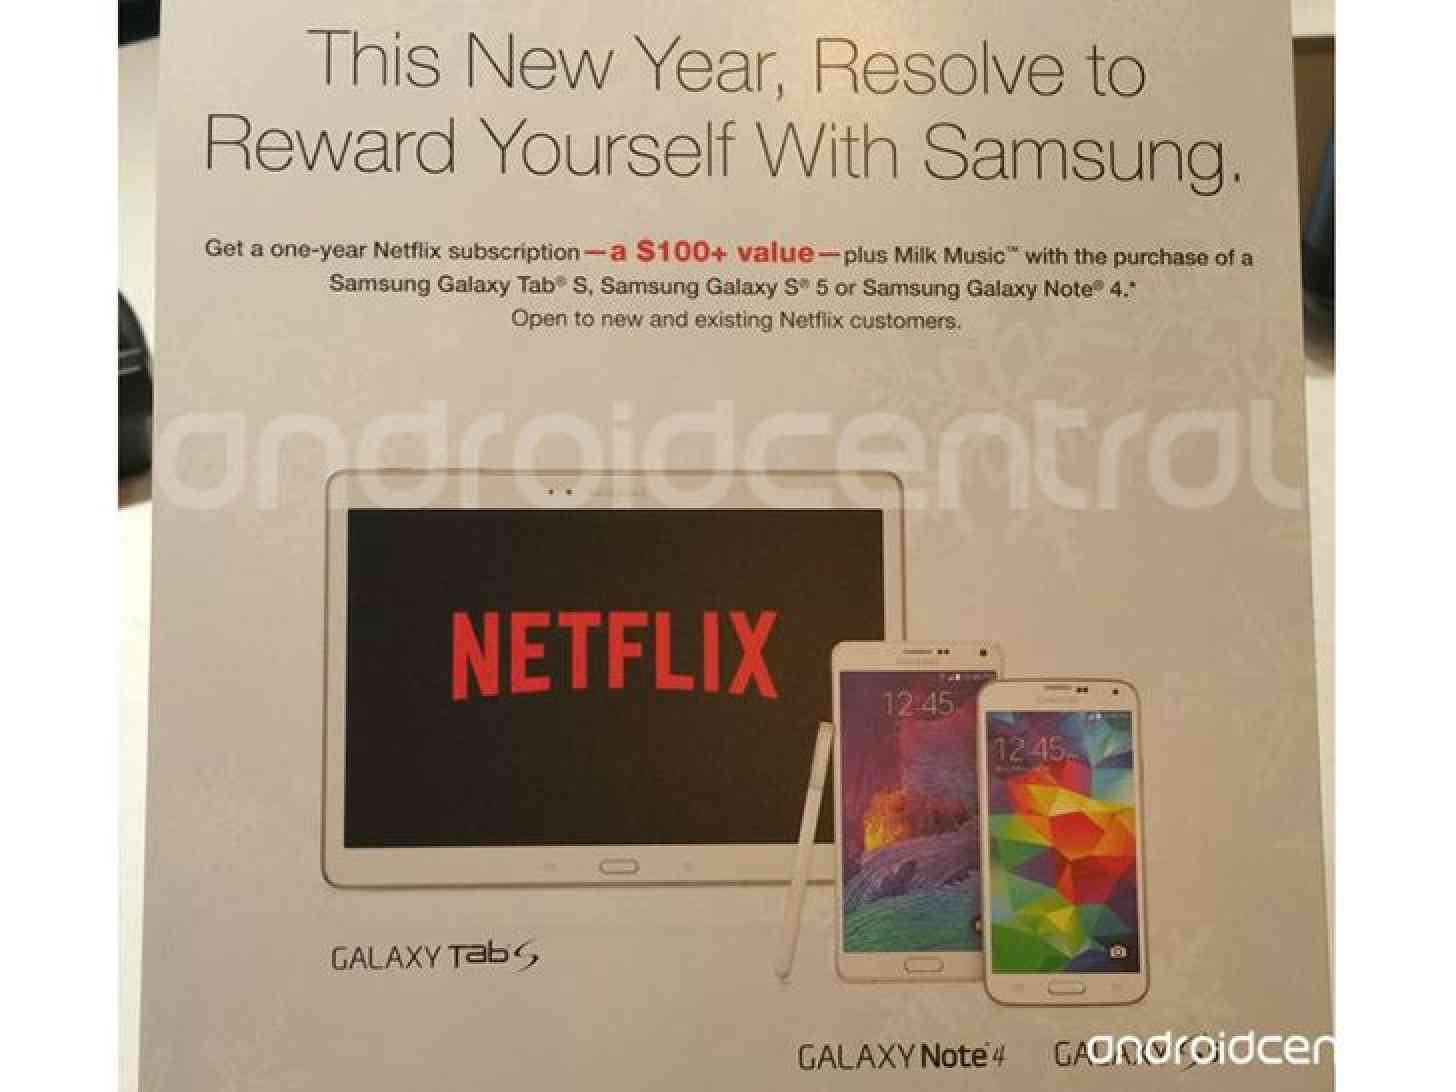 Samsung Galaxy Note 4, Galaxy S5, Galaxy Tab S Netflix promo leak